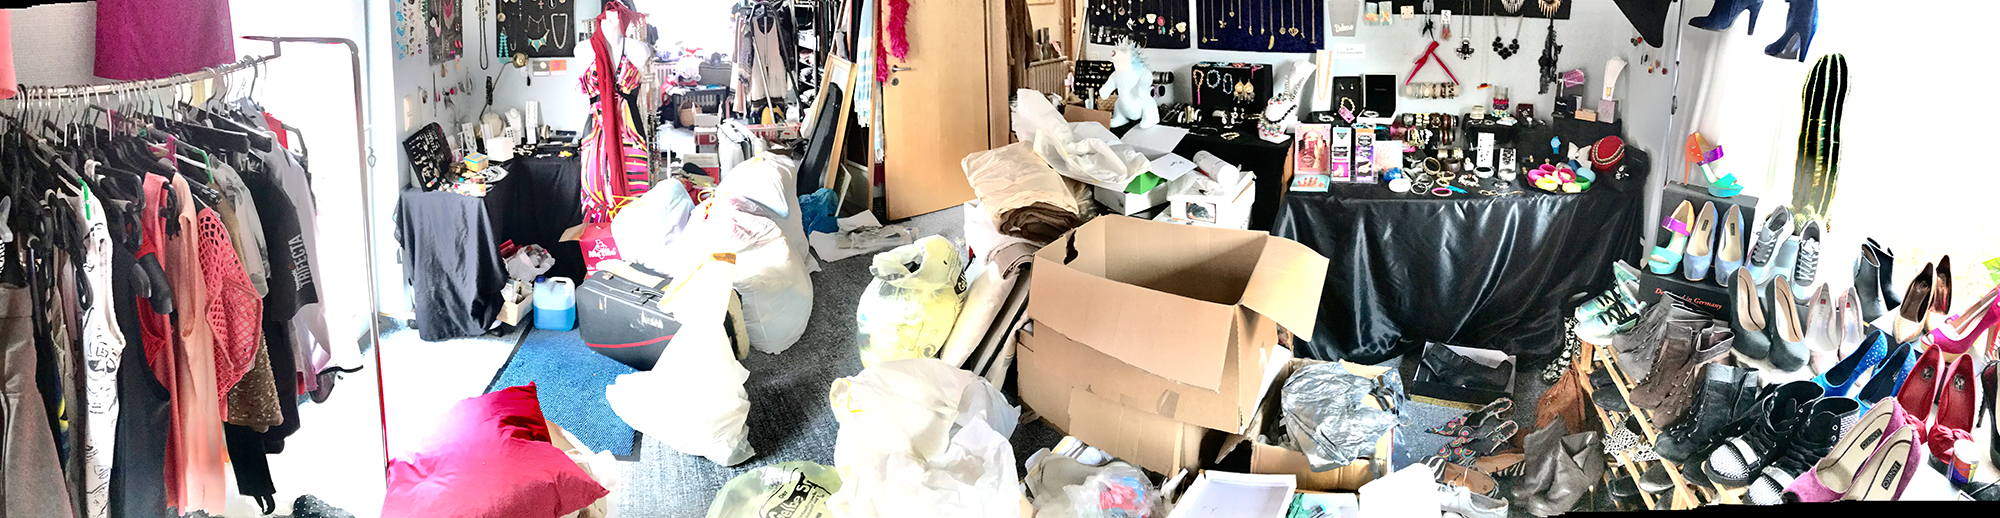 Wohnzimmer im Chaos